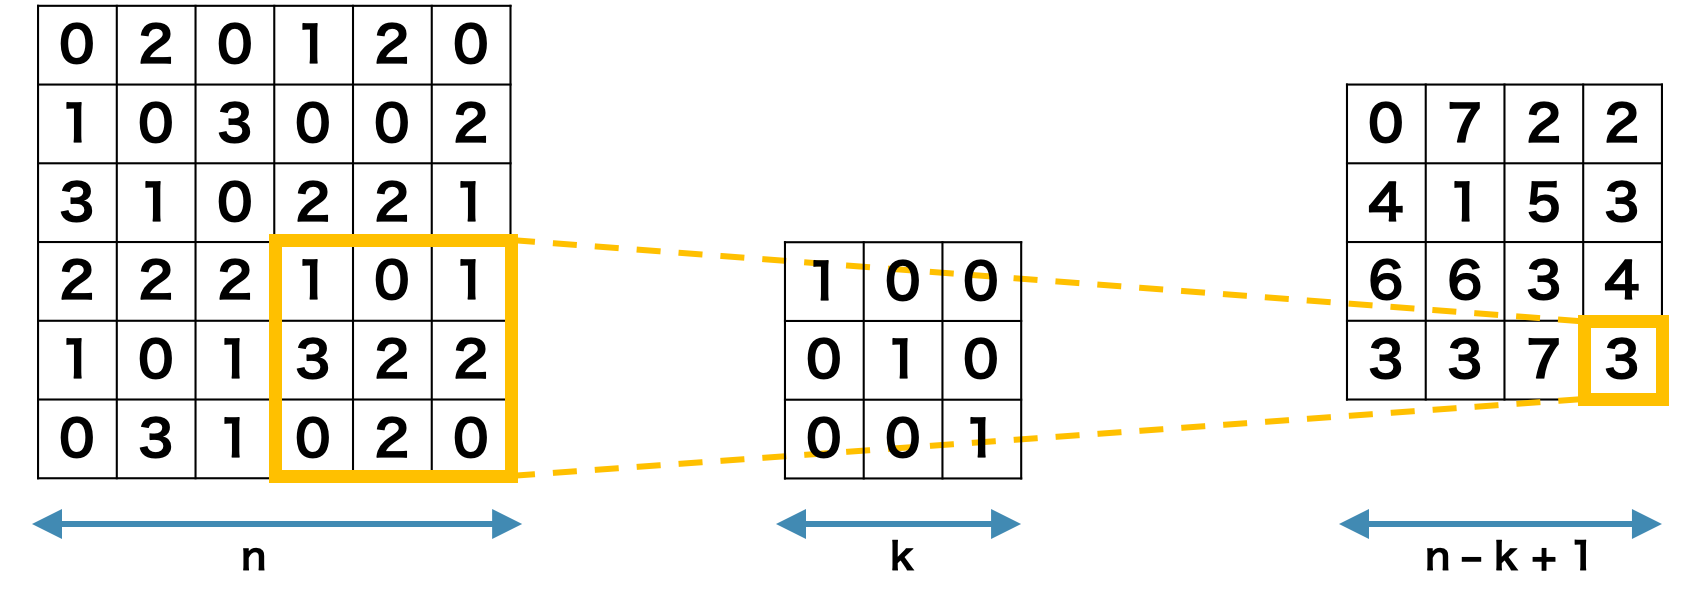 畳み込み演算によって行列のサイズが減少する。